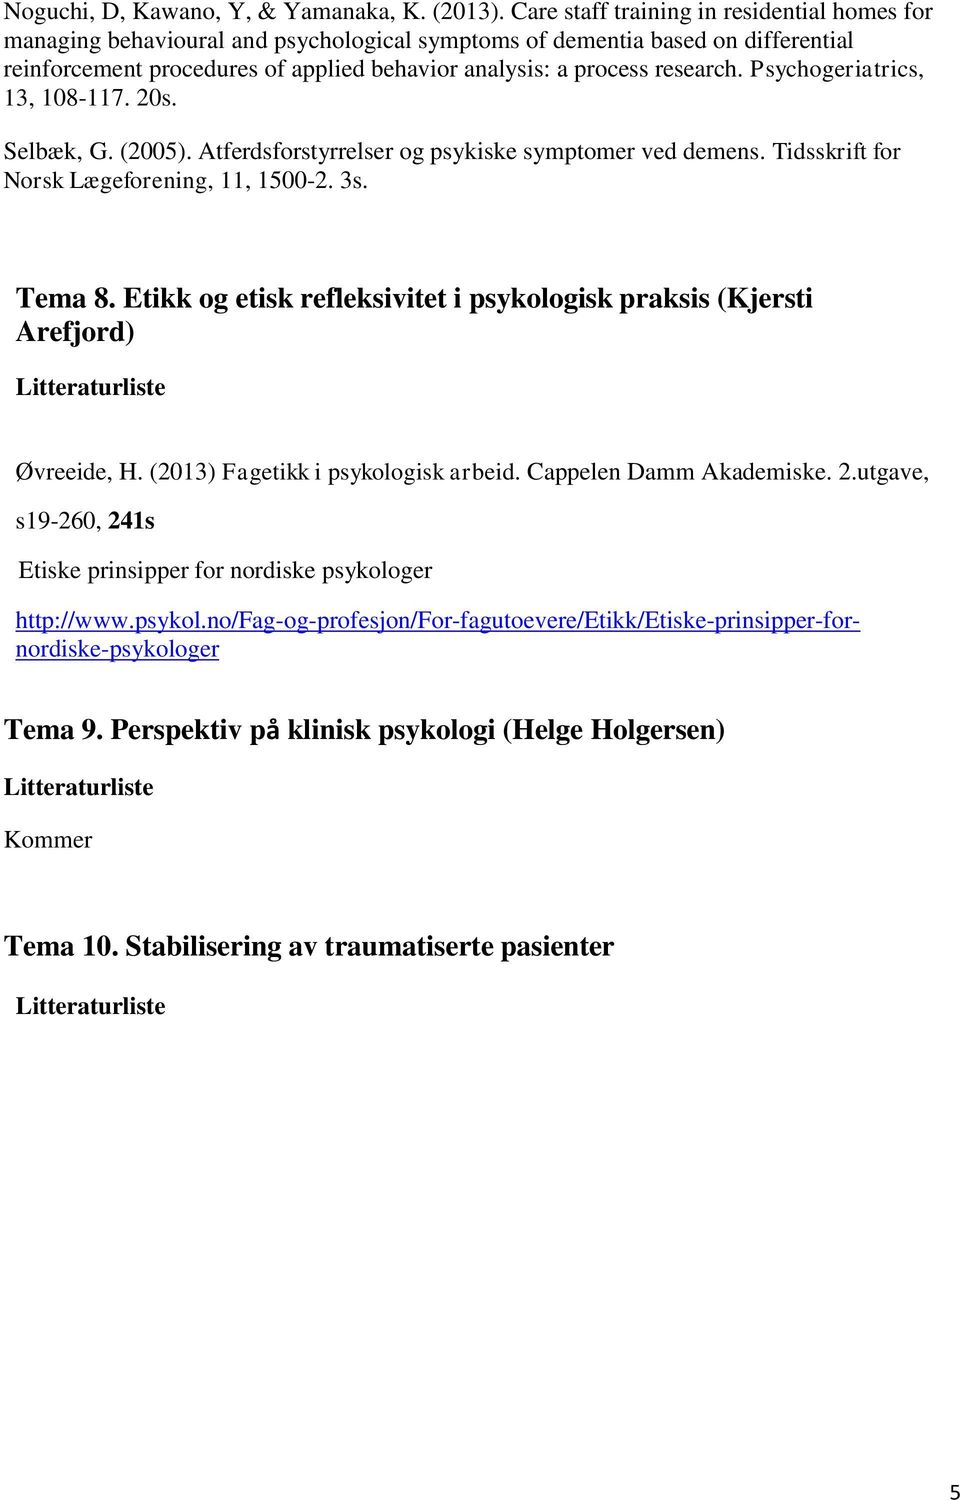 research. Psychogeriatrics, 13, 108-117. 20s. Selbæk, G. (2005). Atferdsforstyrrelser og psykiske symptomer ved demens. Tidsskrift for Norsk Lægeforening, 11, 1500-2. 3s. Tema 8.